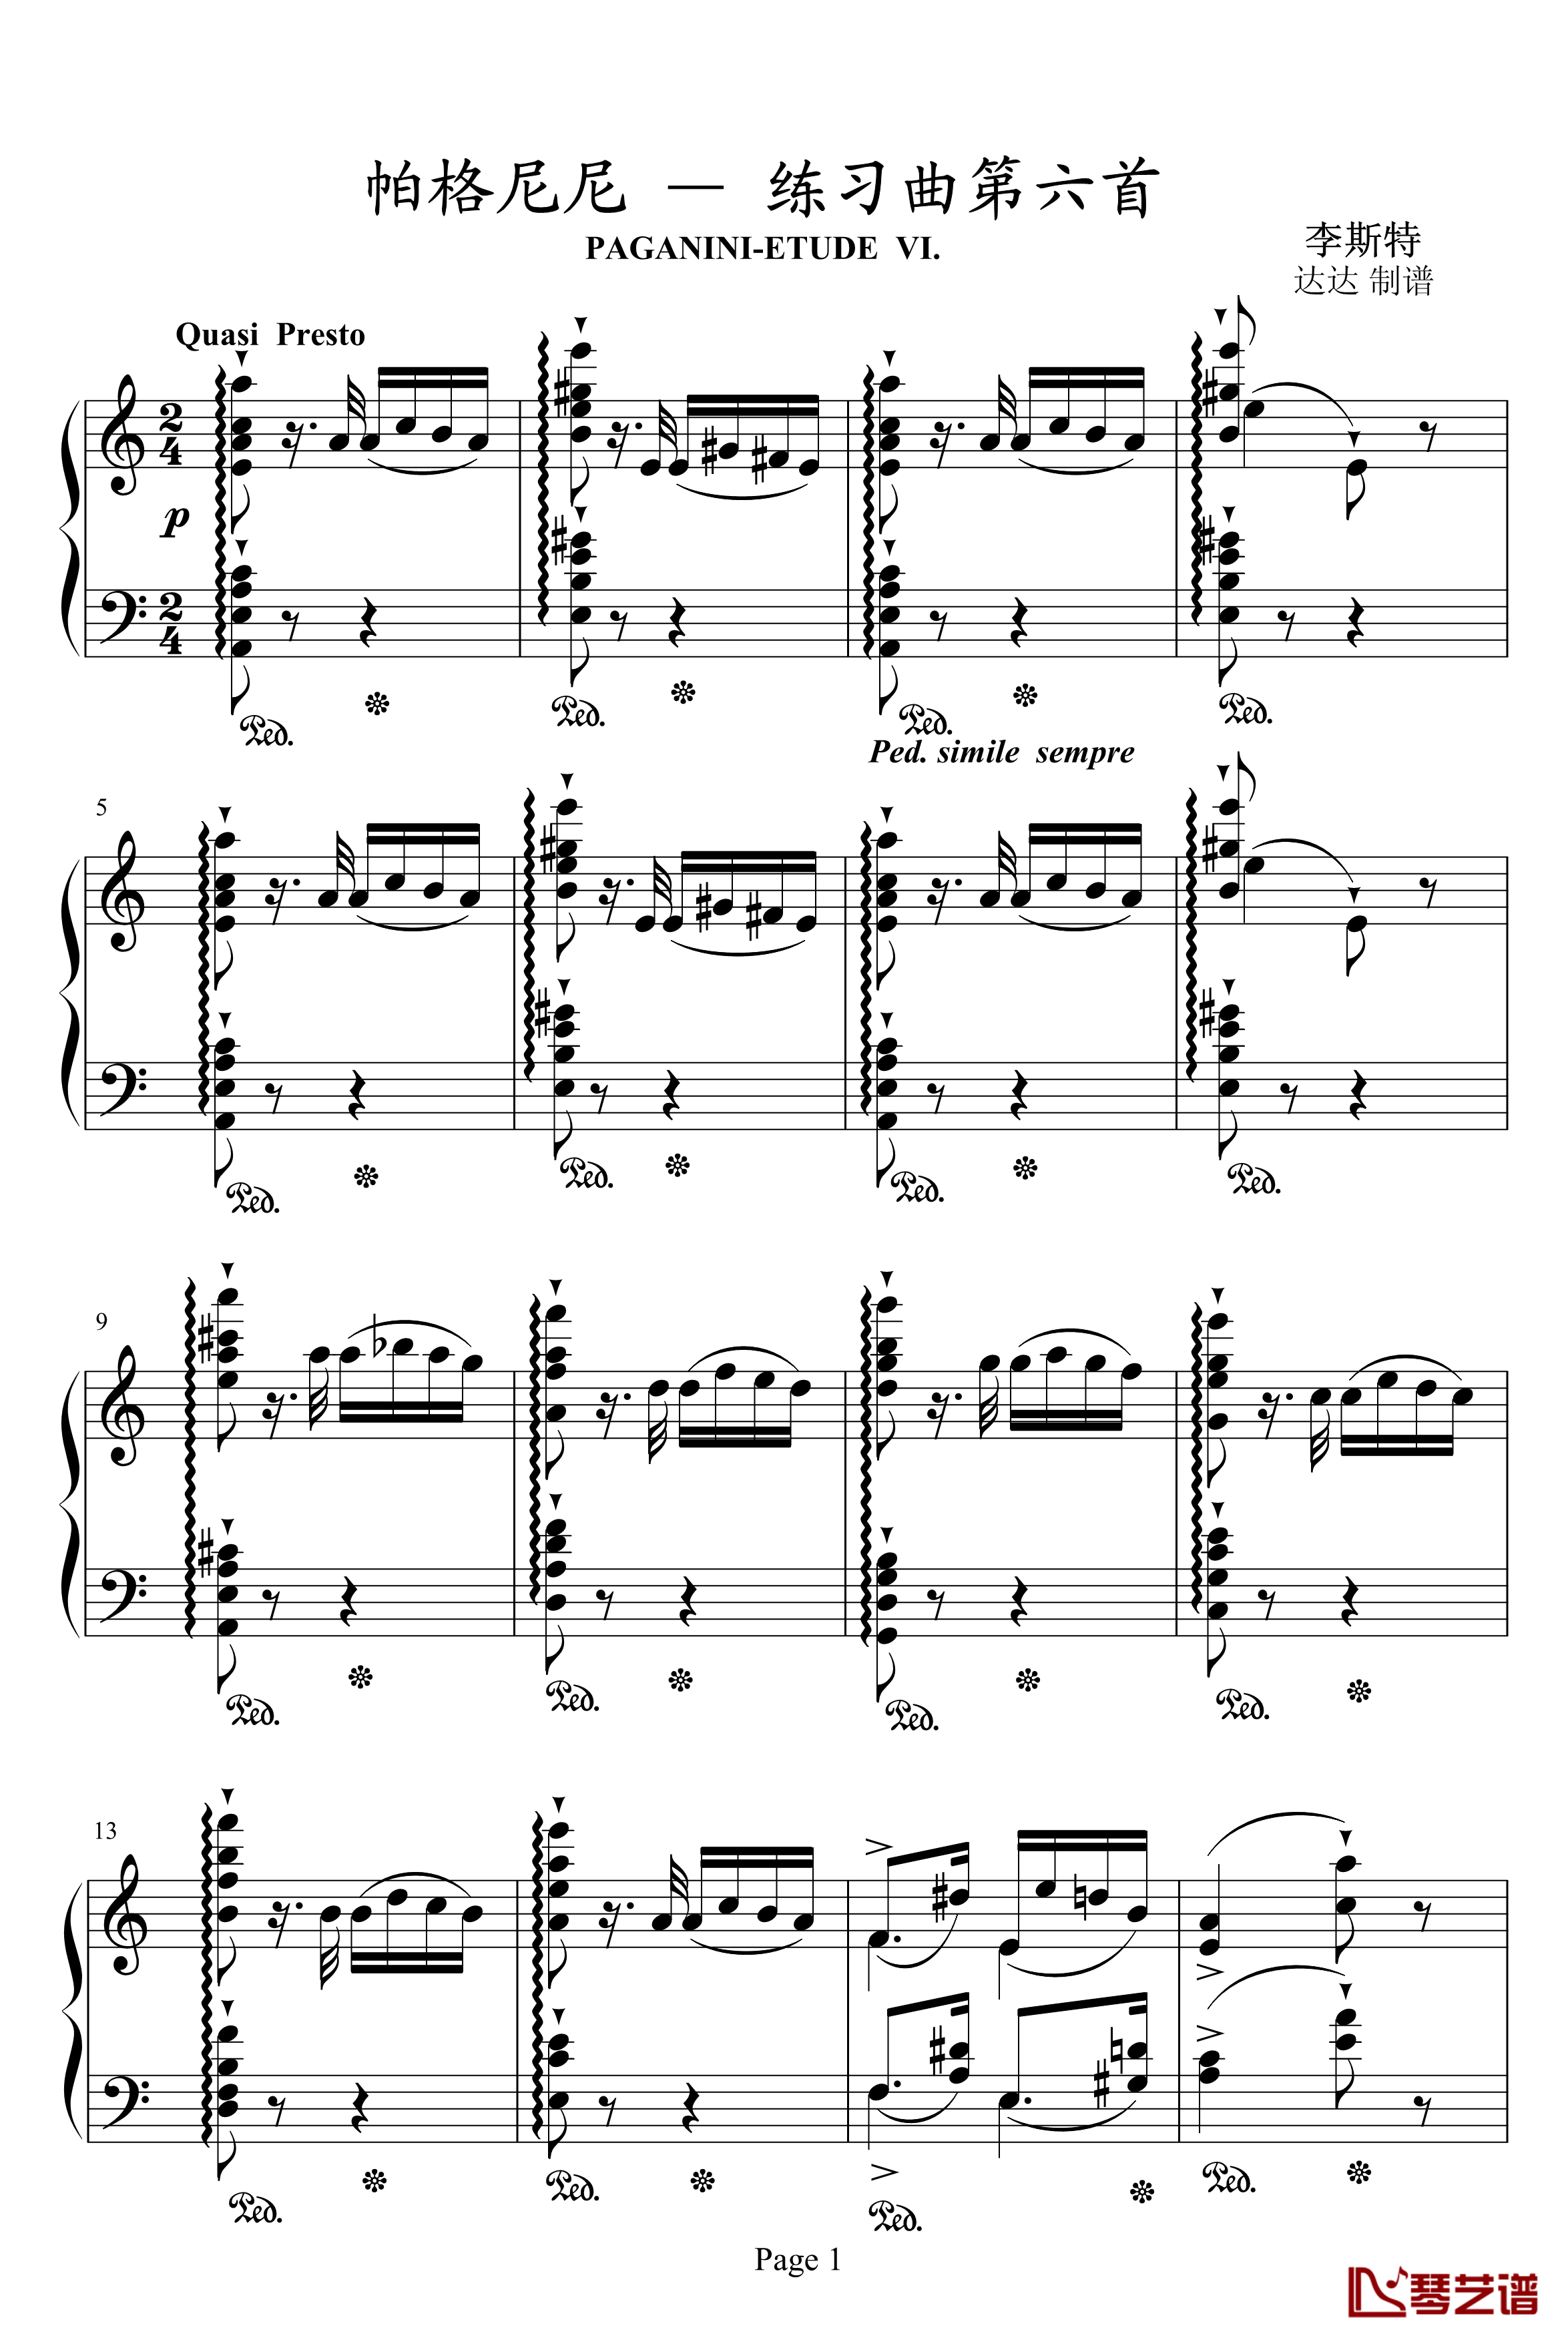 帕格尼尼练习曲钢琴谱-李斯特1